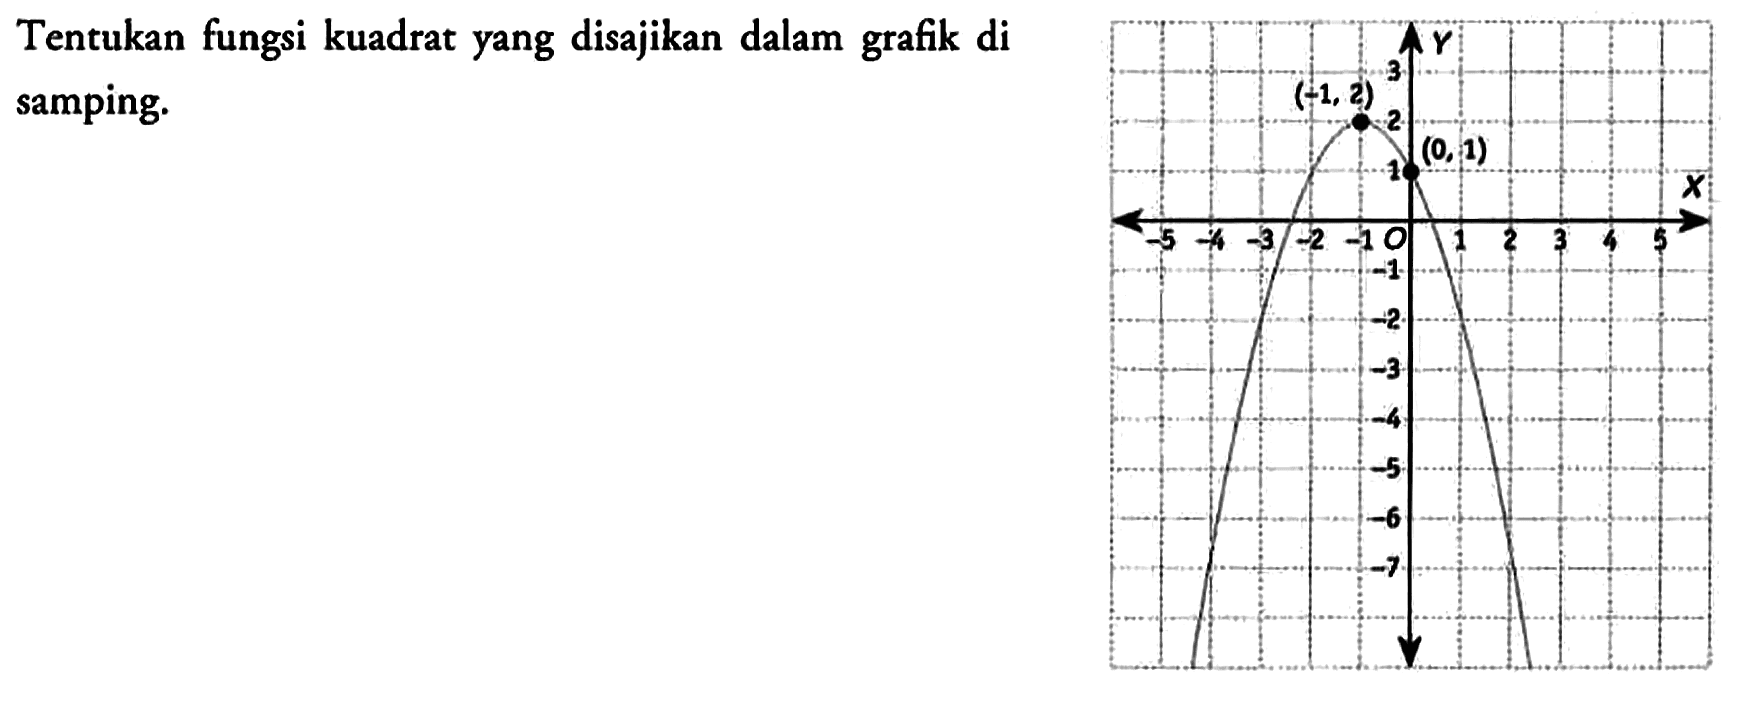 Tentukan fungsi kuadrat yang disajikan dalam grafik di samping.
Y (-1, 2) 3 2 1 (0,1) -5 -4 -3 -2 -1 0 1 2 3 4 5 X -1 -2 -3 -4 -5 -6 -7 